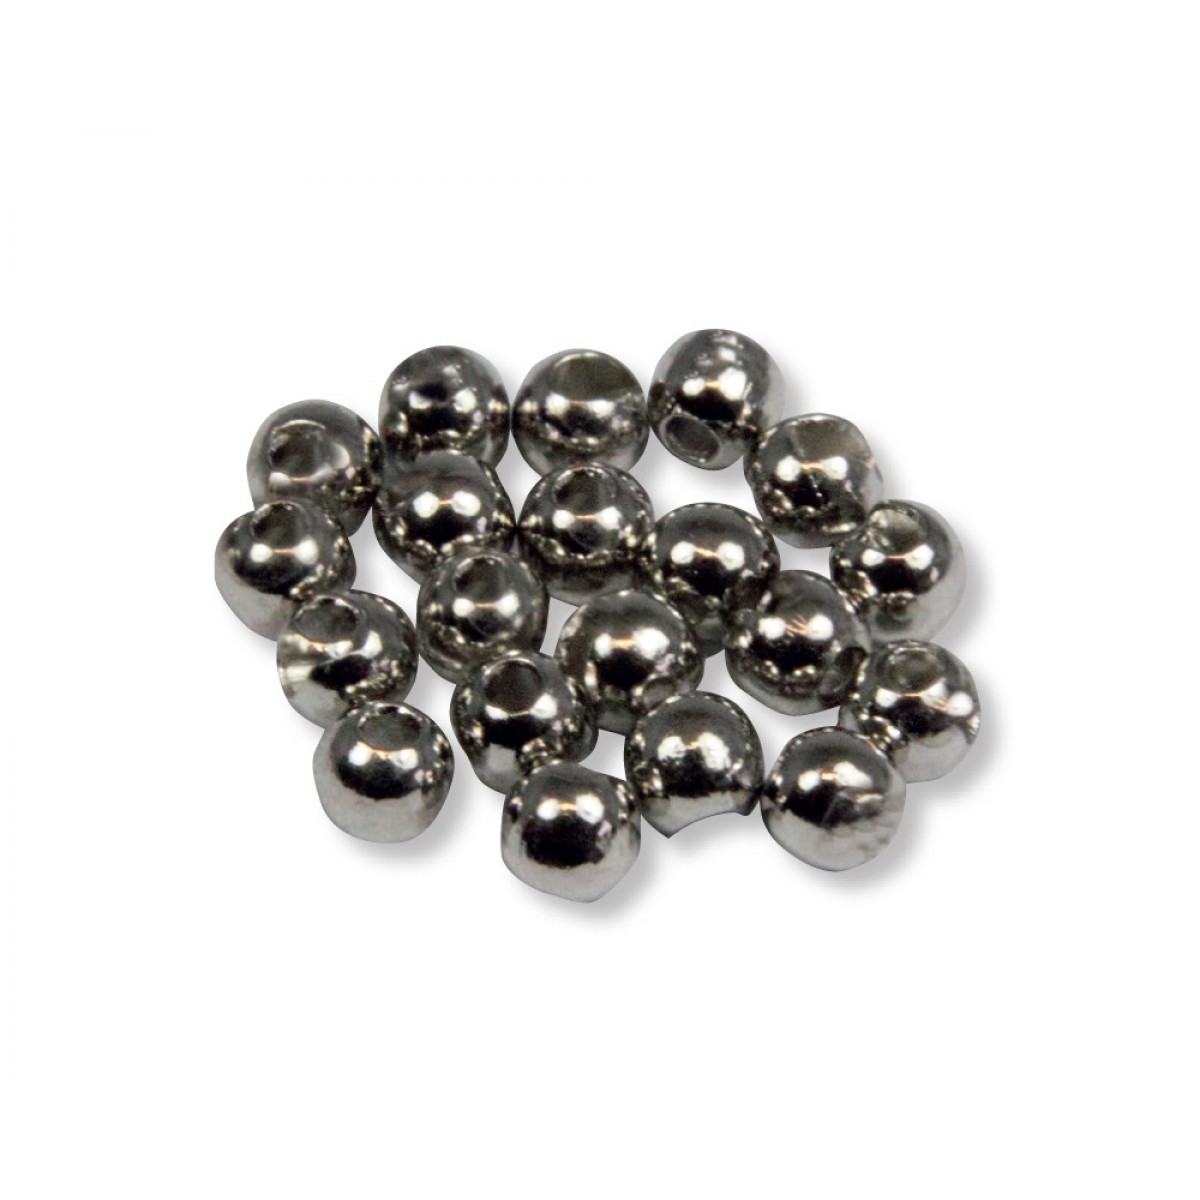 Tungsten Perlen (silber)